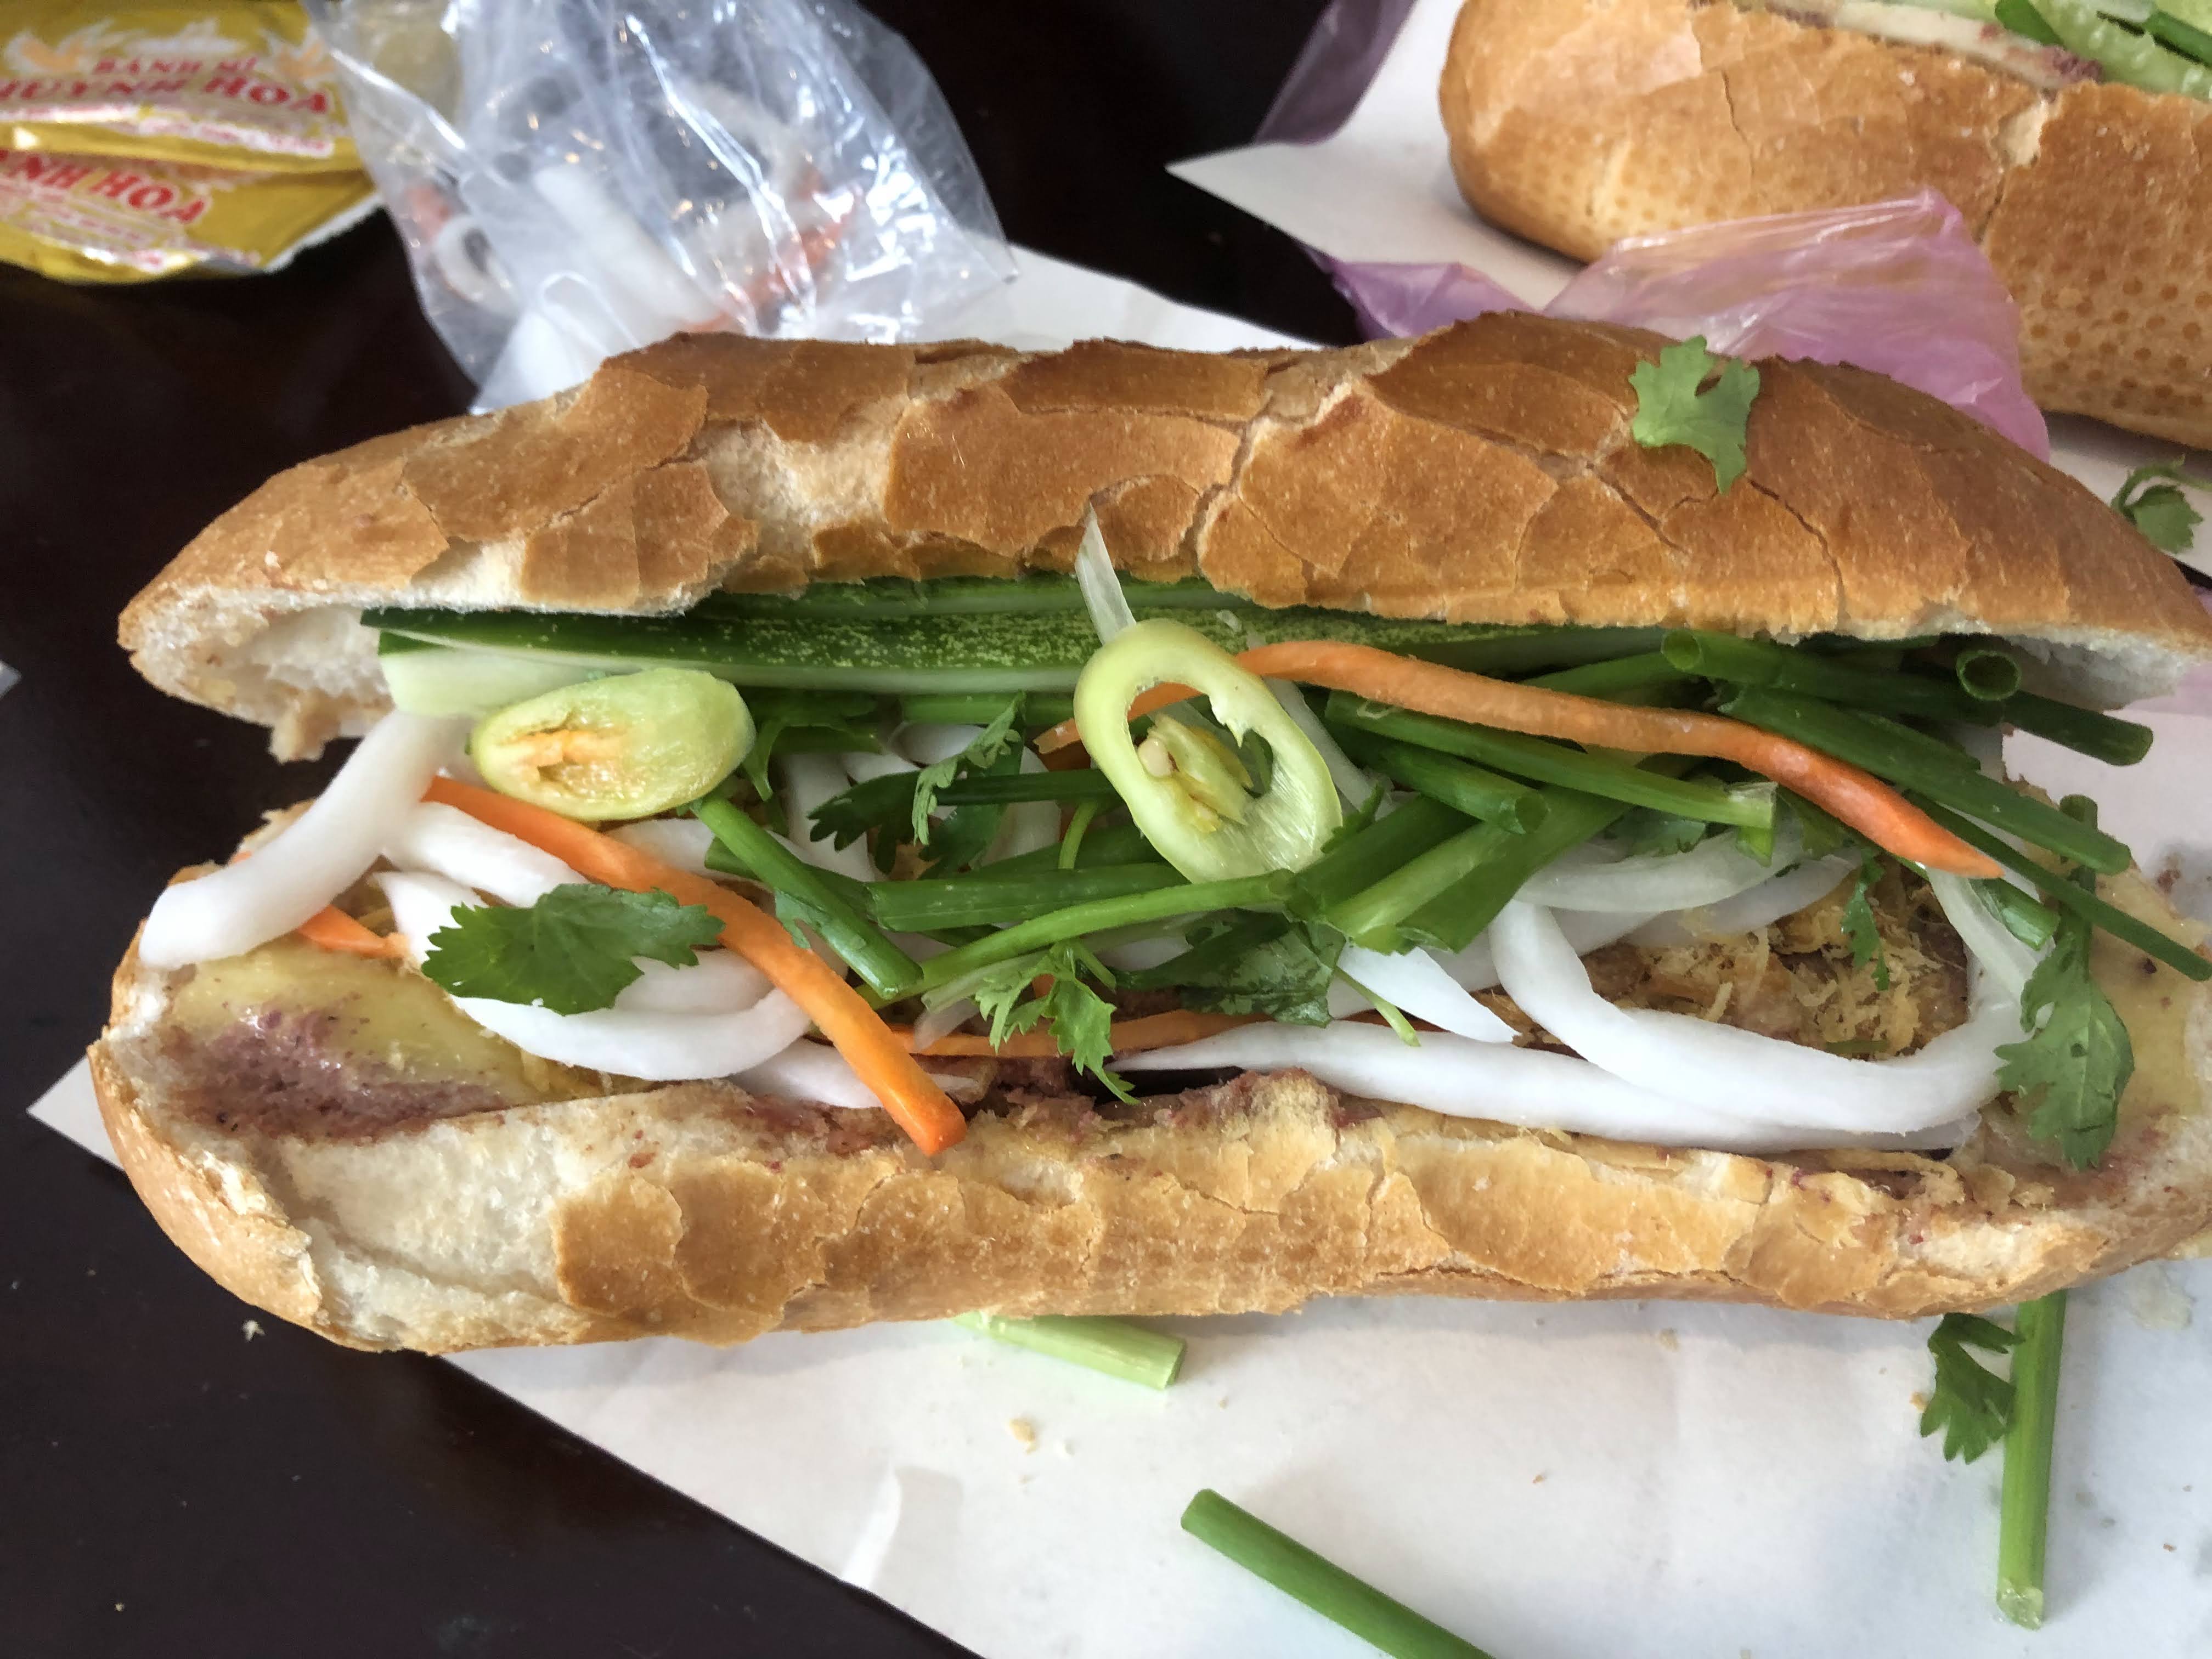 Bánh Mì Vietnamese sandwich from Bánh Mì Huynh Hoa in Ho Chi Minh City (Saigon), Vietnam